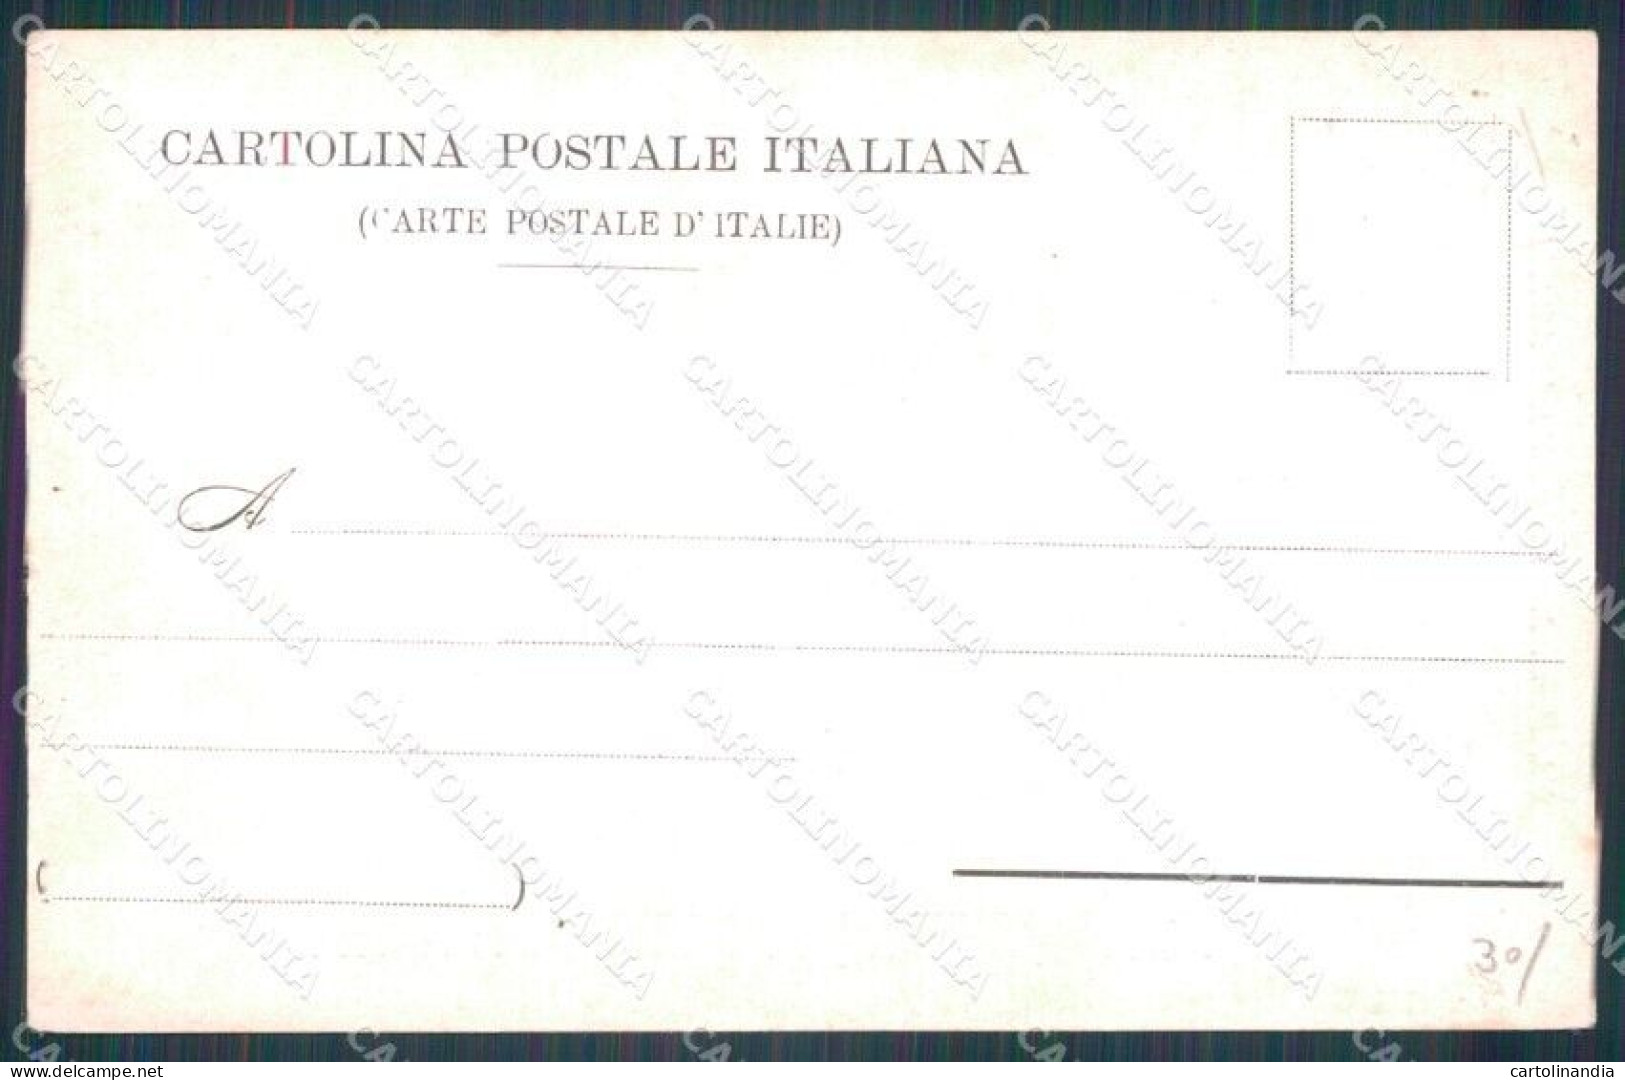 Pistoia Montecatini Stabilimento Tettuccio Cartolina WX2487 - Pistoia